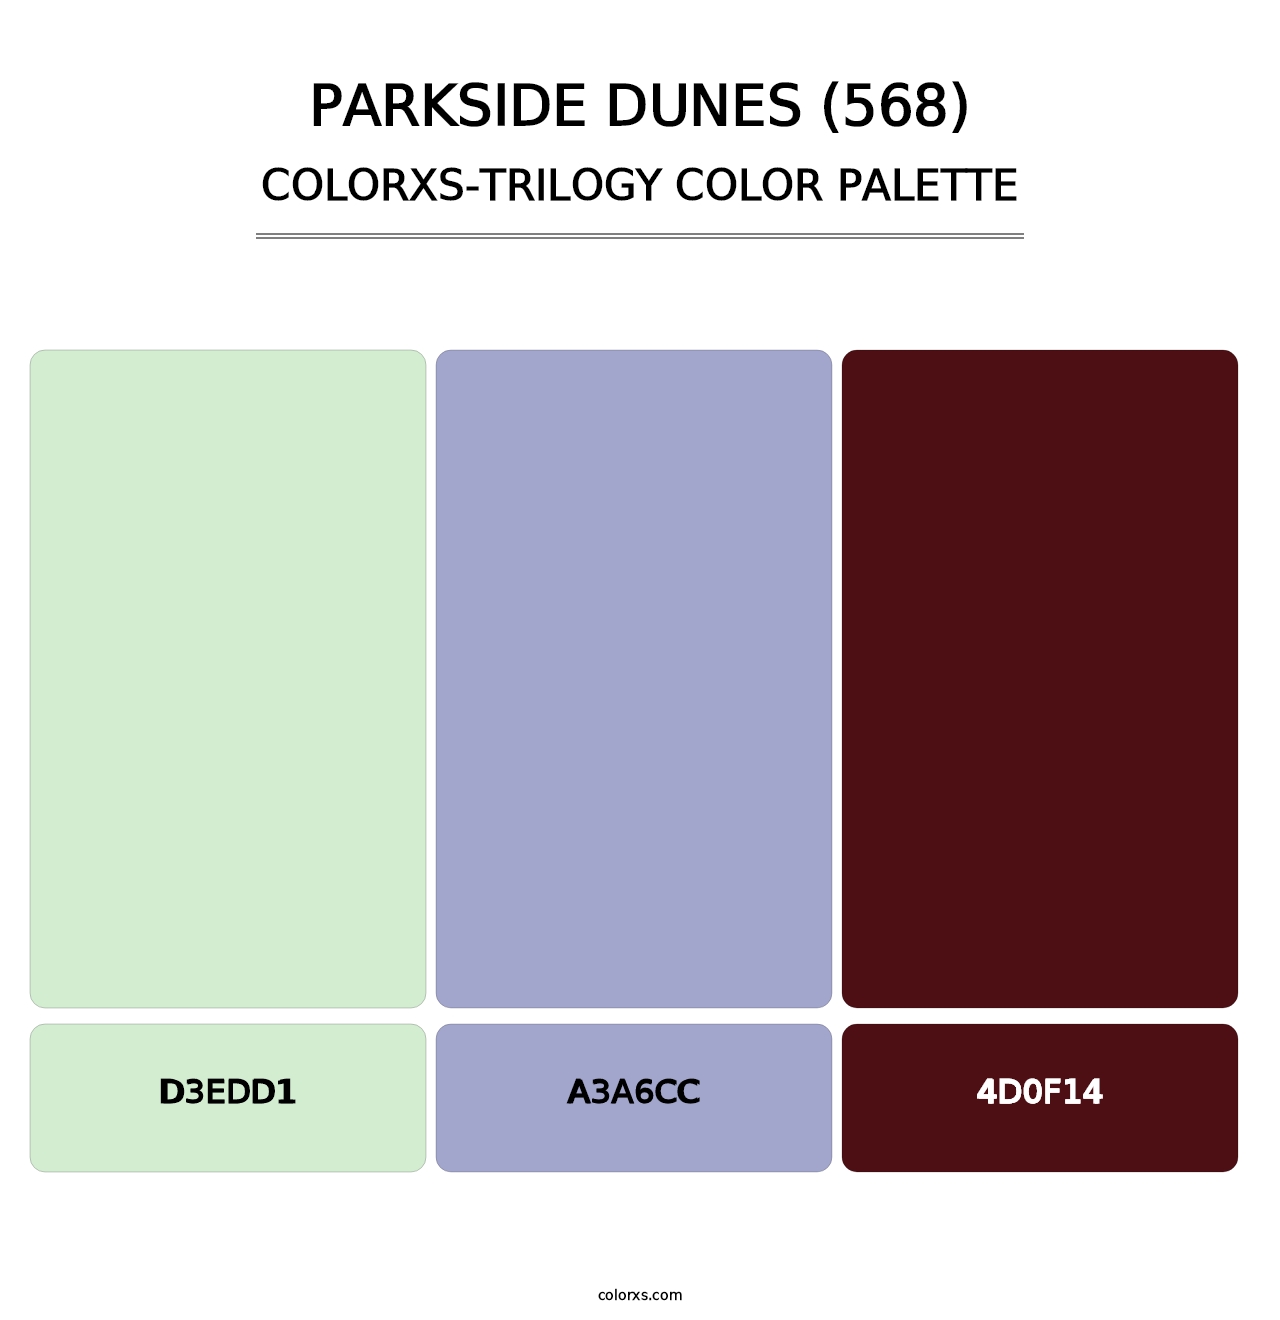 Parkside Dunes (568) - Colorxs Trilogy Palette